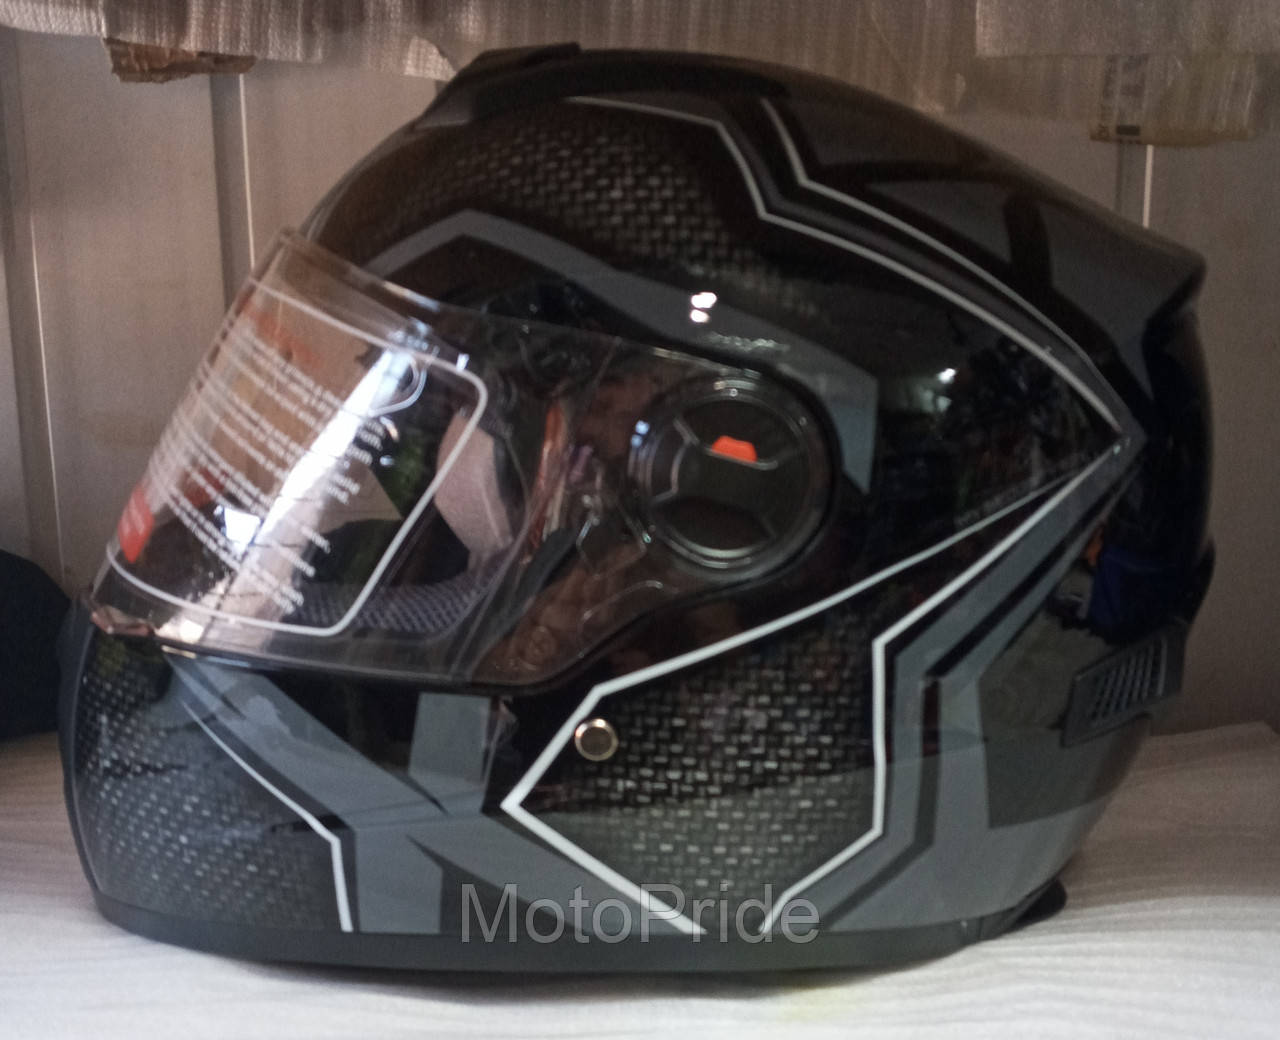 

Шлем скорпион м61